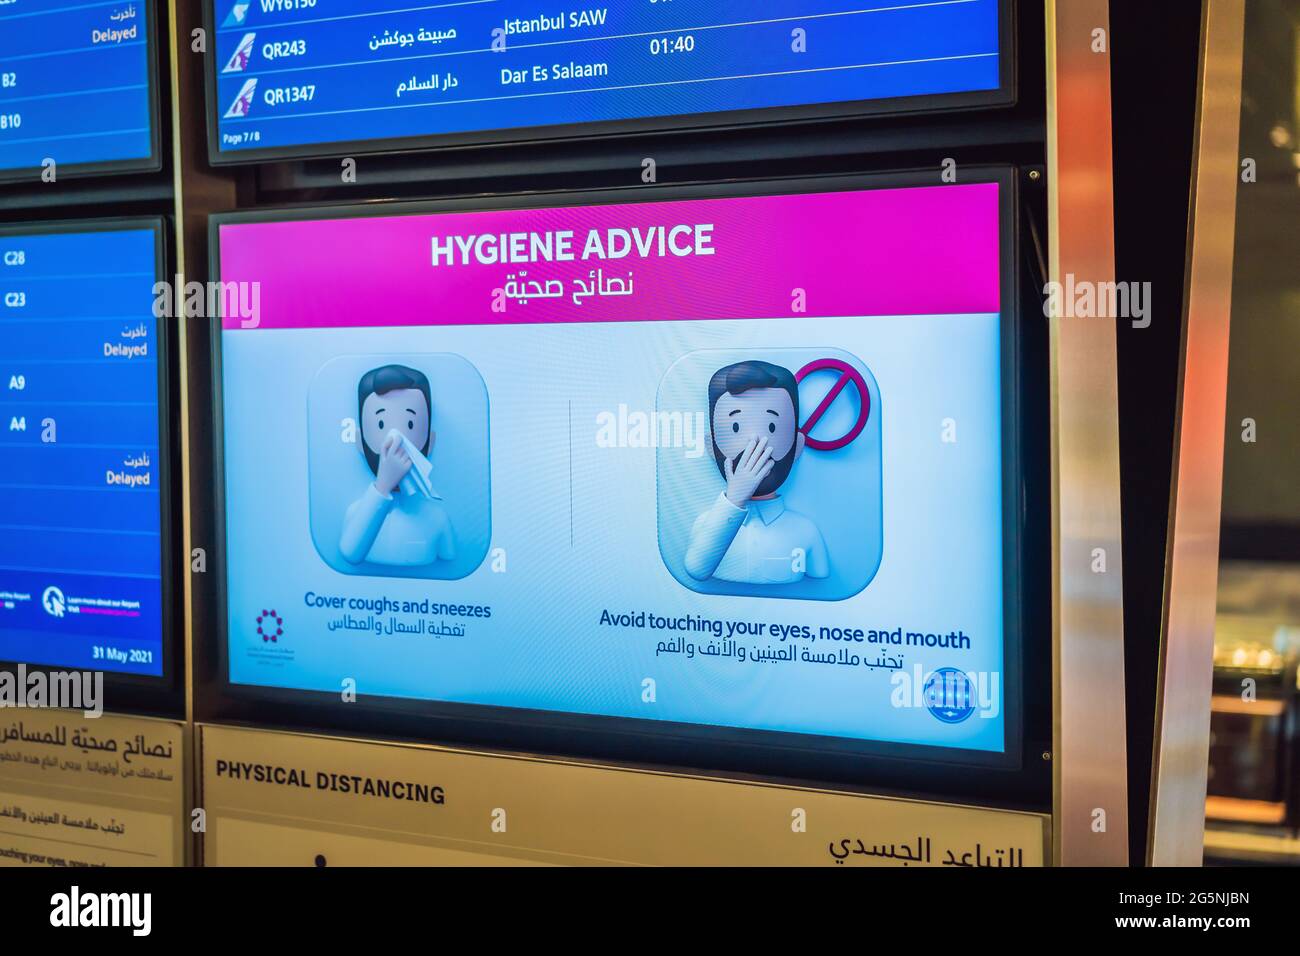 31.05.2021, Doha, Qatar: Schermo con avviso di sicurezza per il coronavirus in aeroporto Foto Stock